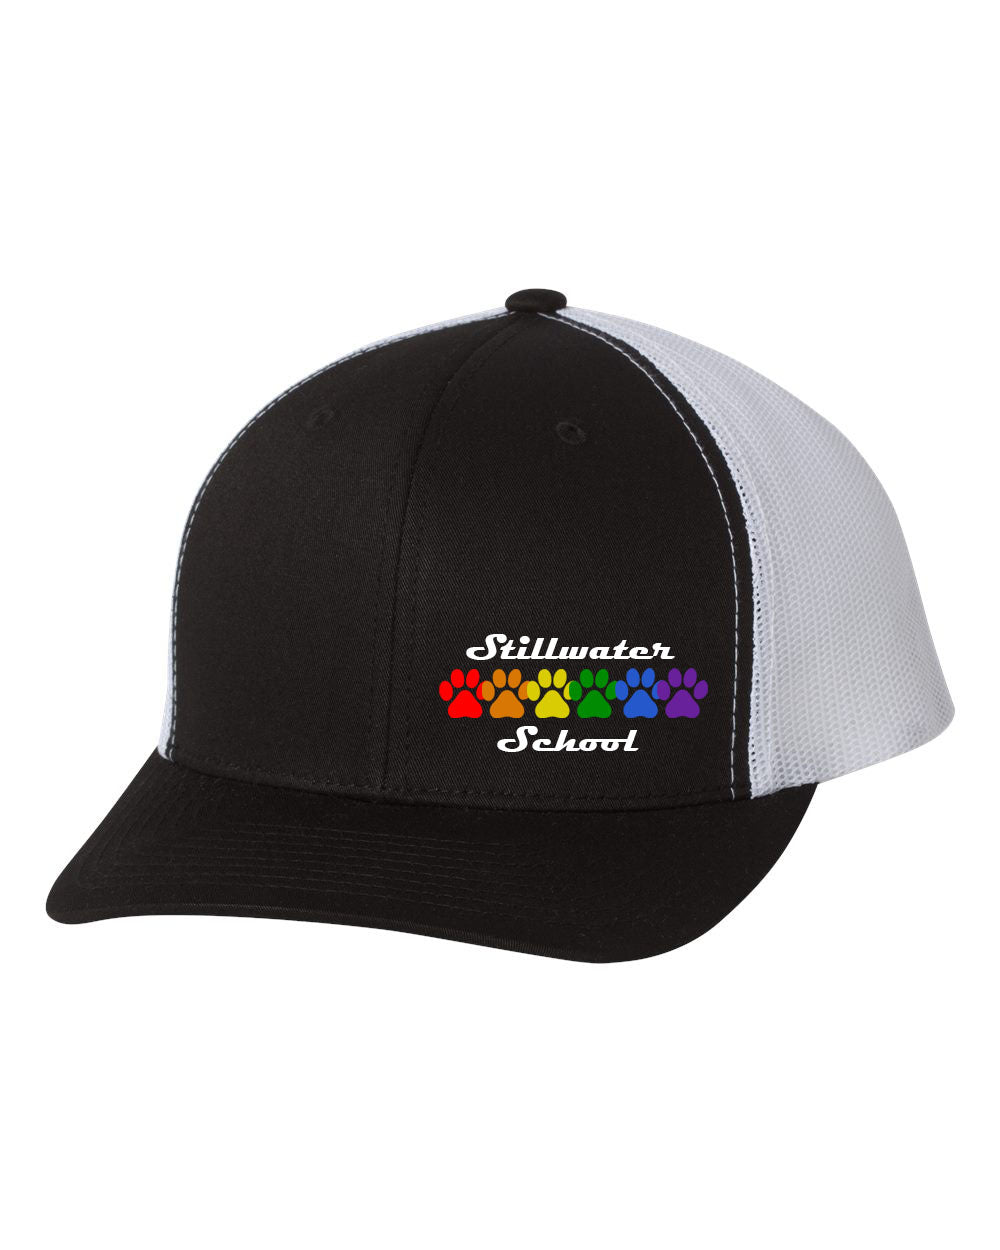 Stillwater Design 3 Trucker Hat